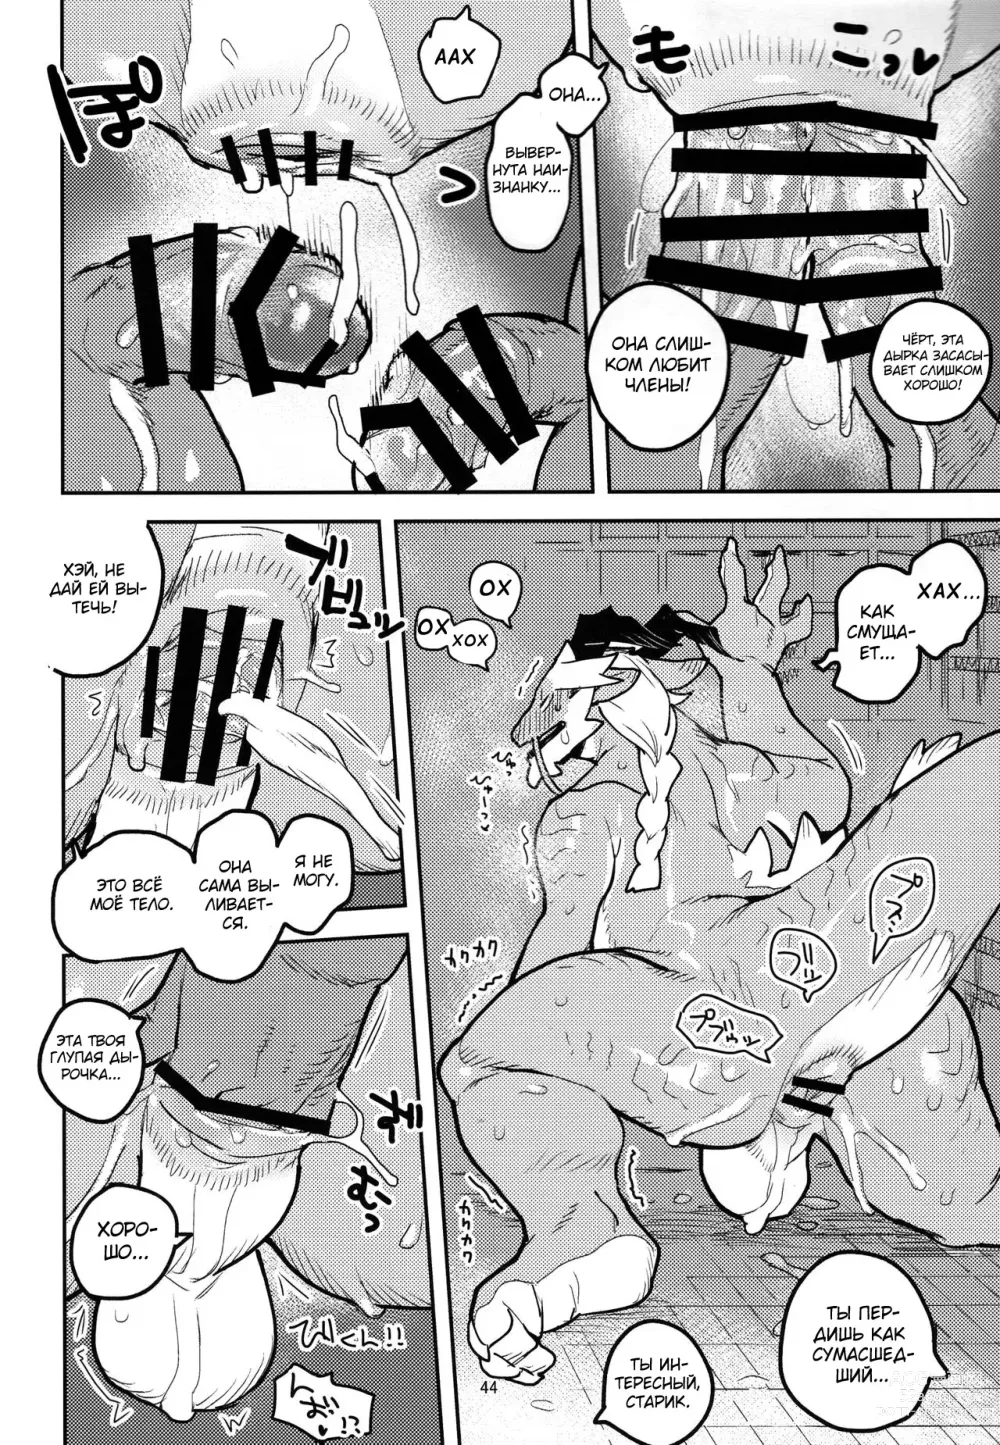 Page 43 of doujinshi Ikuikusai